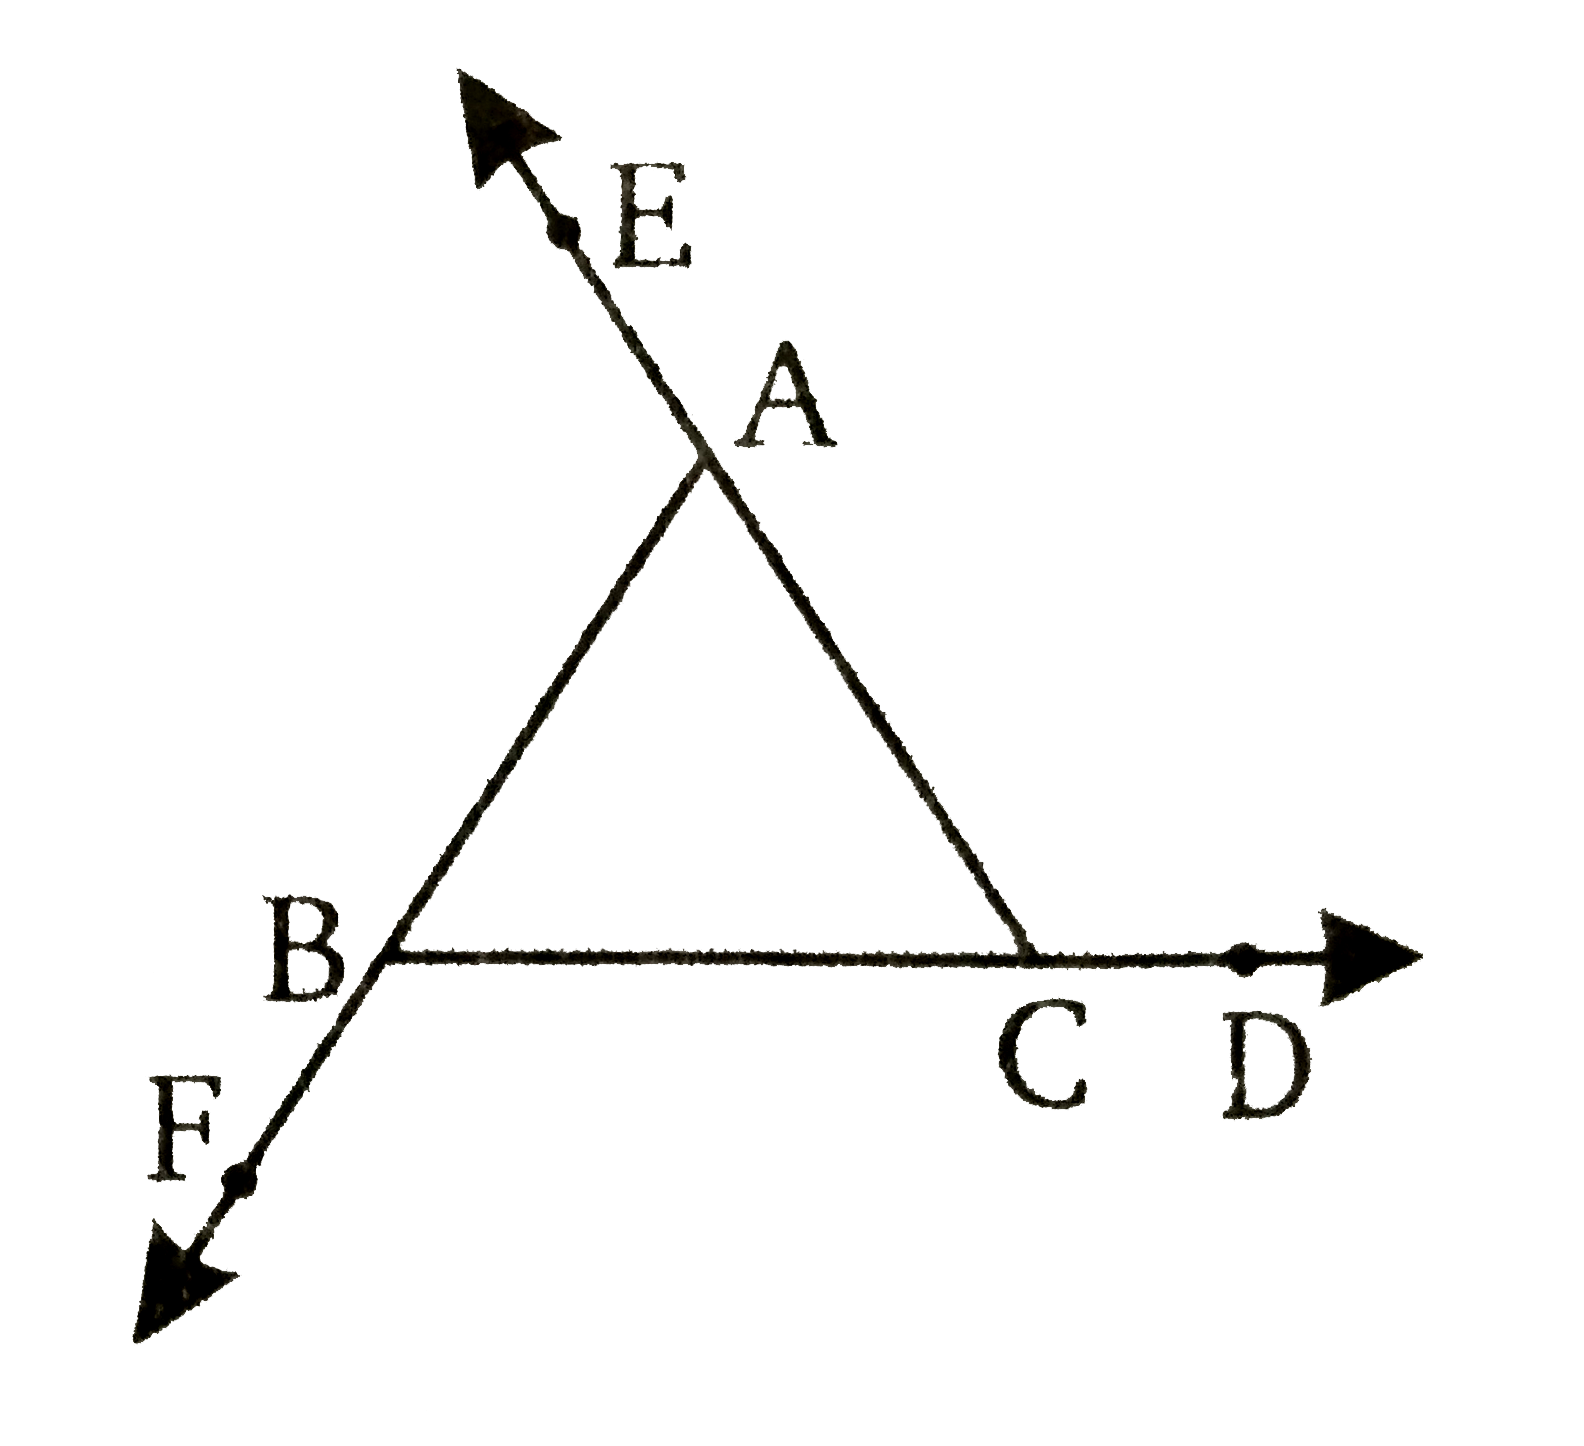 यदि एक त्रिभुज कि भुजाएँ क्रम में बढ़ायी गयी है तो सिद्ध कीजिए कि बने हुए बहिष्कोणों का योग, चार सम कोणों के बराबर है।